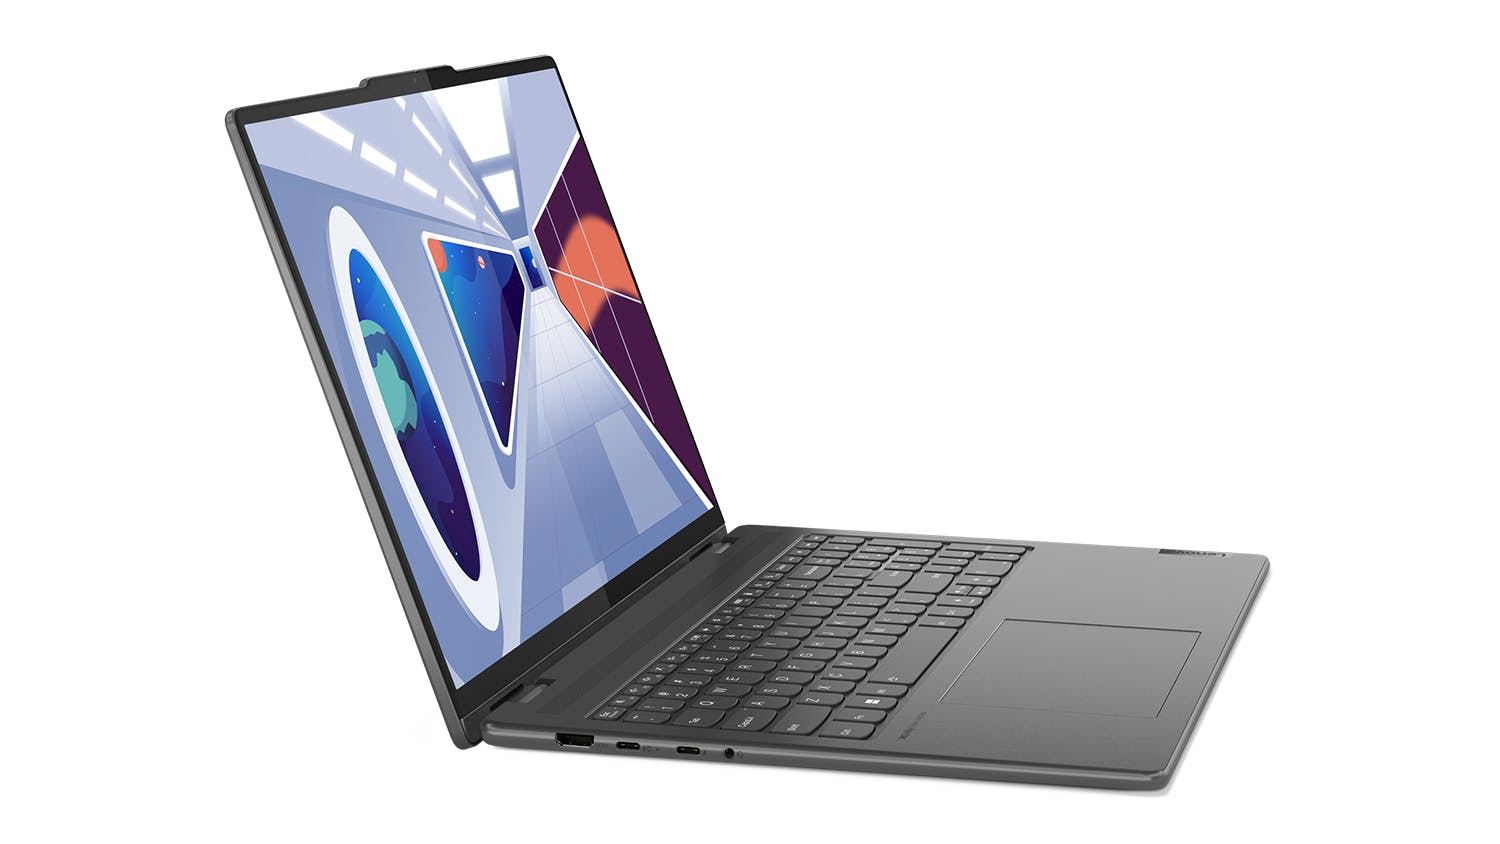 Lenovo Yoga 7i (8th Gen) 16" 2-in-1 Laptop - Intel Core i7 16GB-RAM 512GB-SSD - Cloud Grey (82YN001WAU)